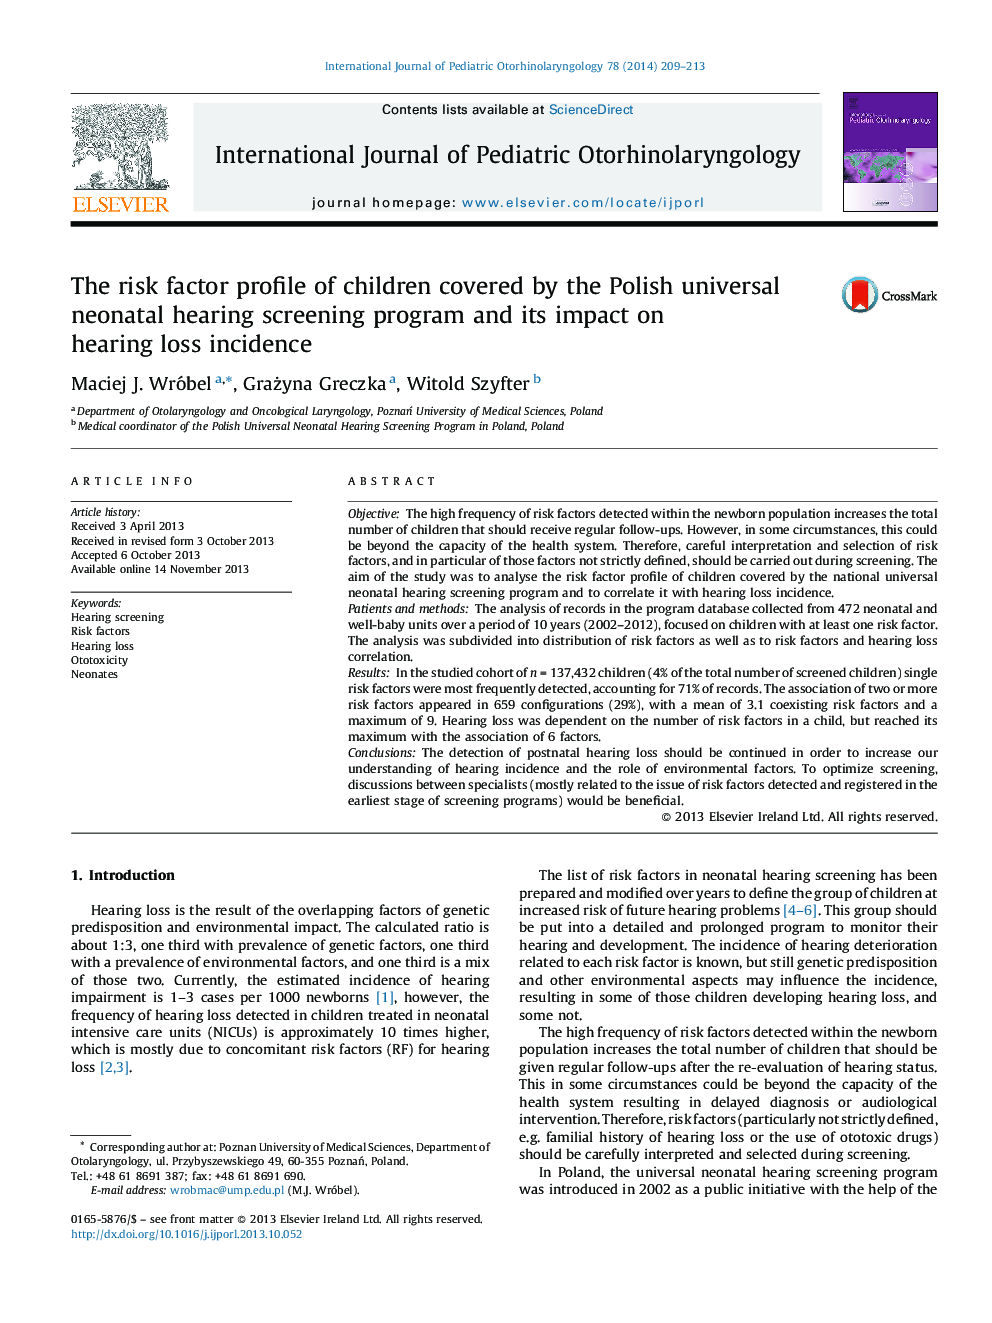 مشخصات فاکتور خطر اطفال تحت پوشش برنامه غربالگری شنوایی عمومی نوزادان لهستان و تأثیر آن بر بروز ضایعات شنوایی 